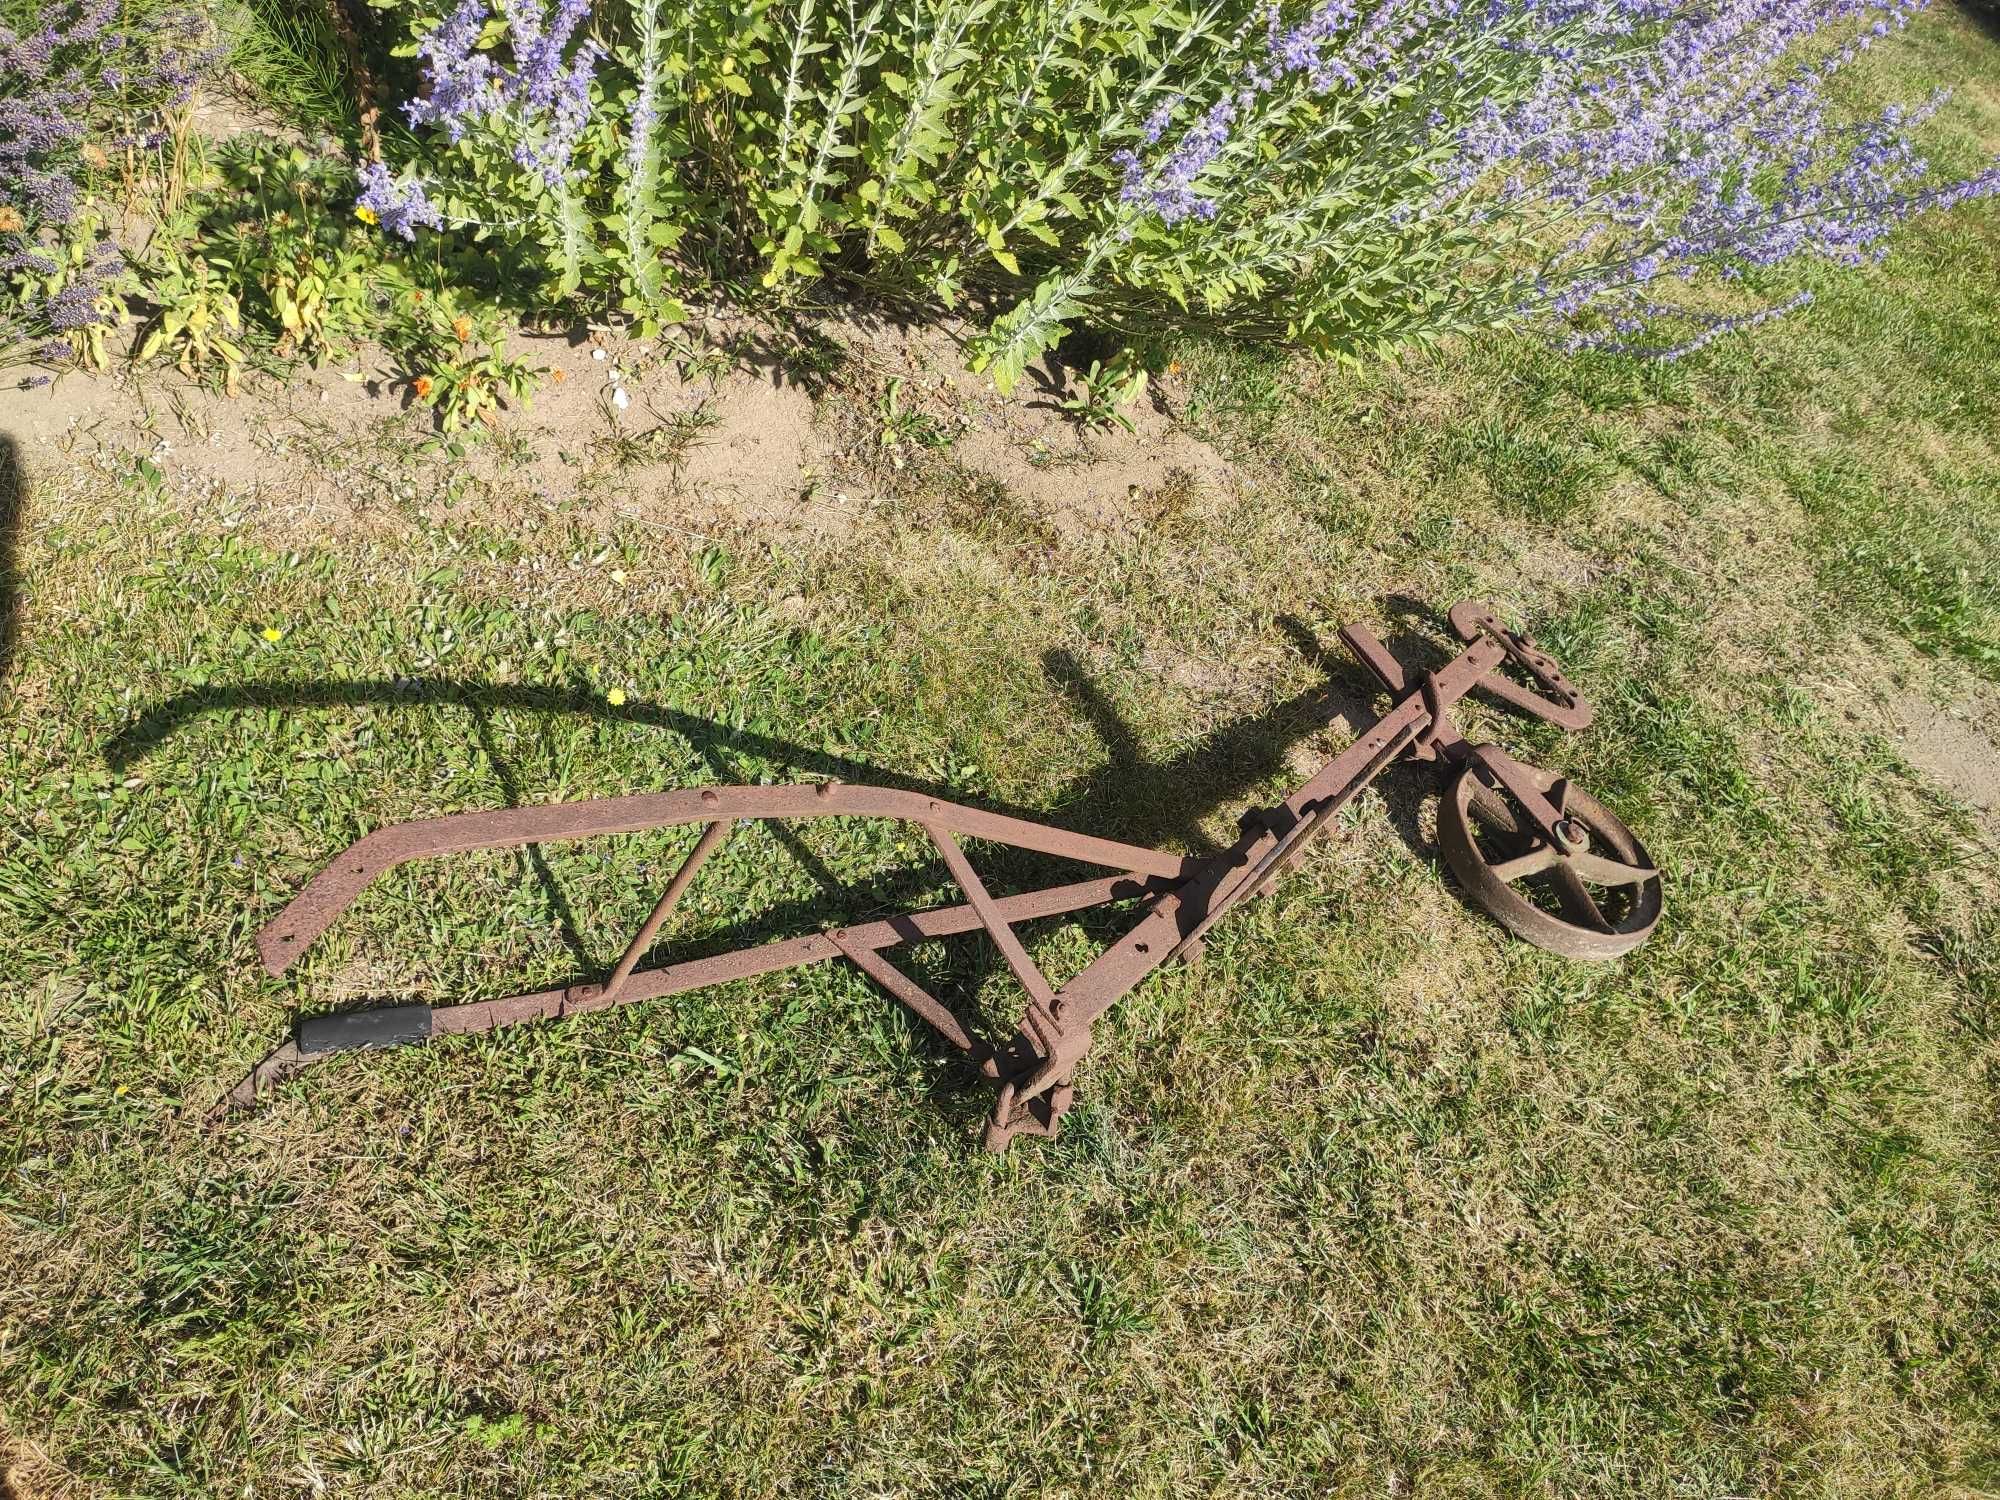 Jednoskibowy pług konny - stare maszyny rolnicze